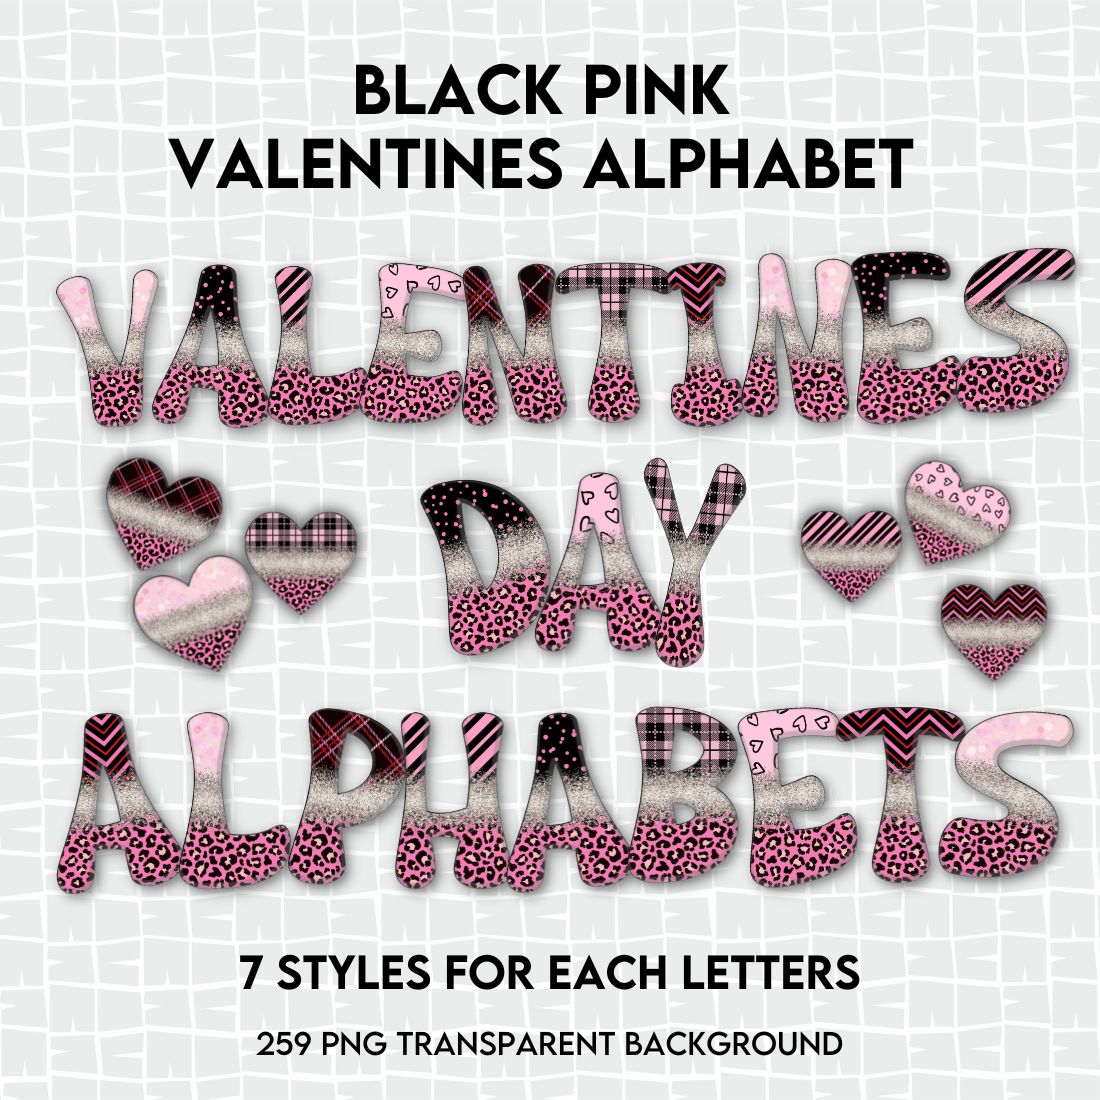 Black Pink Valentines Alphabet -259 PNG Transparent Background.